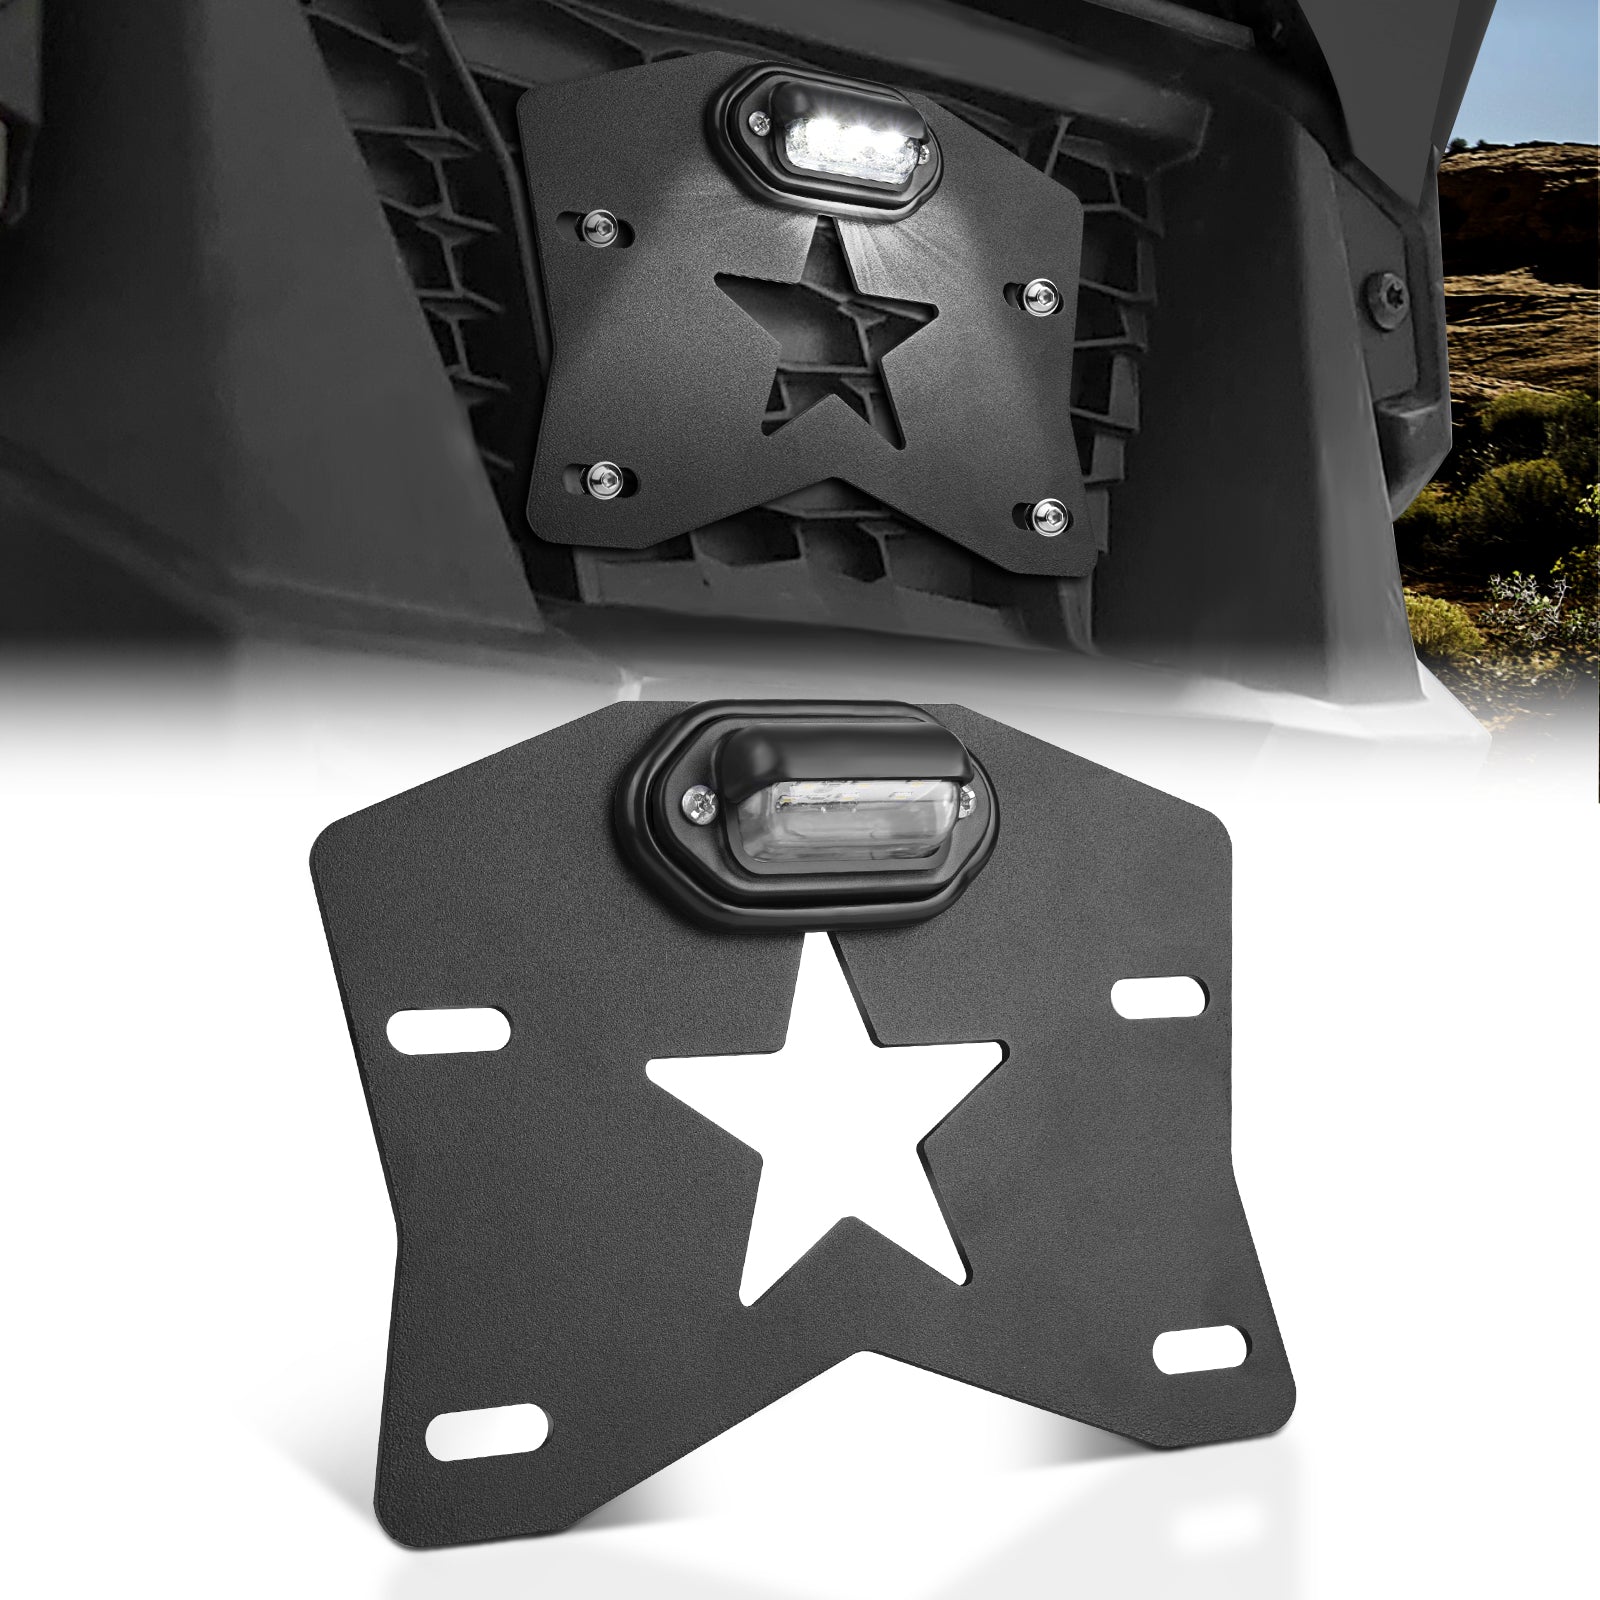 MICTUNING UTV License Plate Frame Holder with LED Light - Aluminium License Plate Bracket Kit